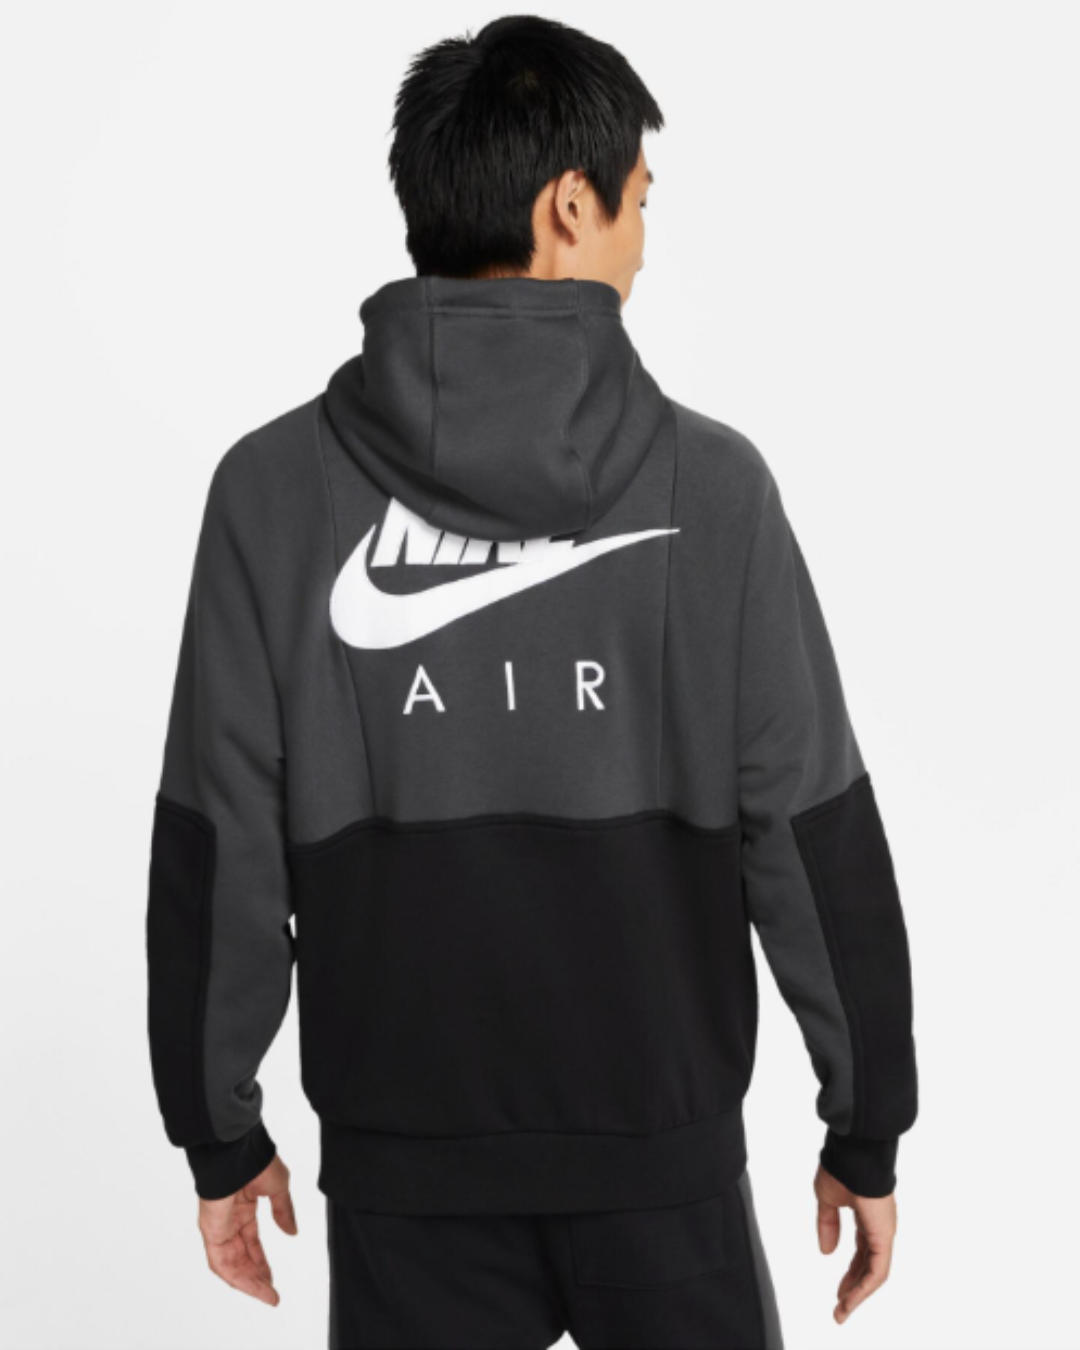 Chaqueta Nike Air Fleece con capucha - Negro/Blanco